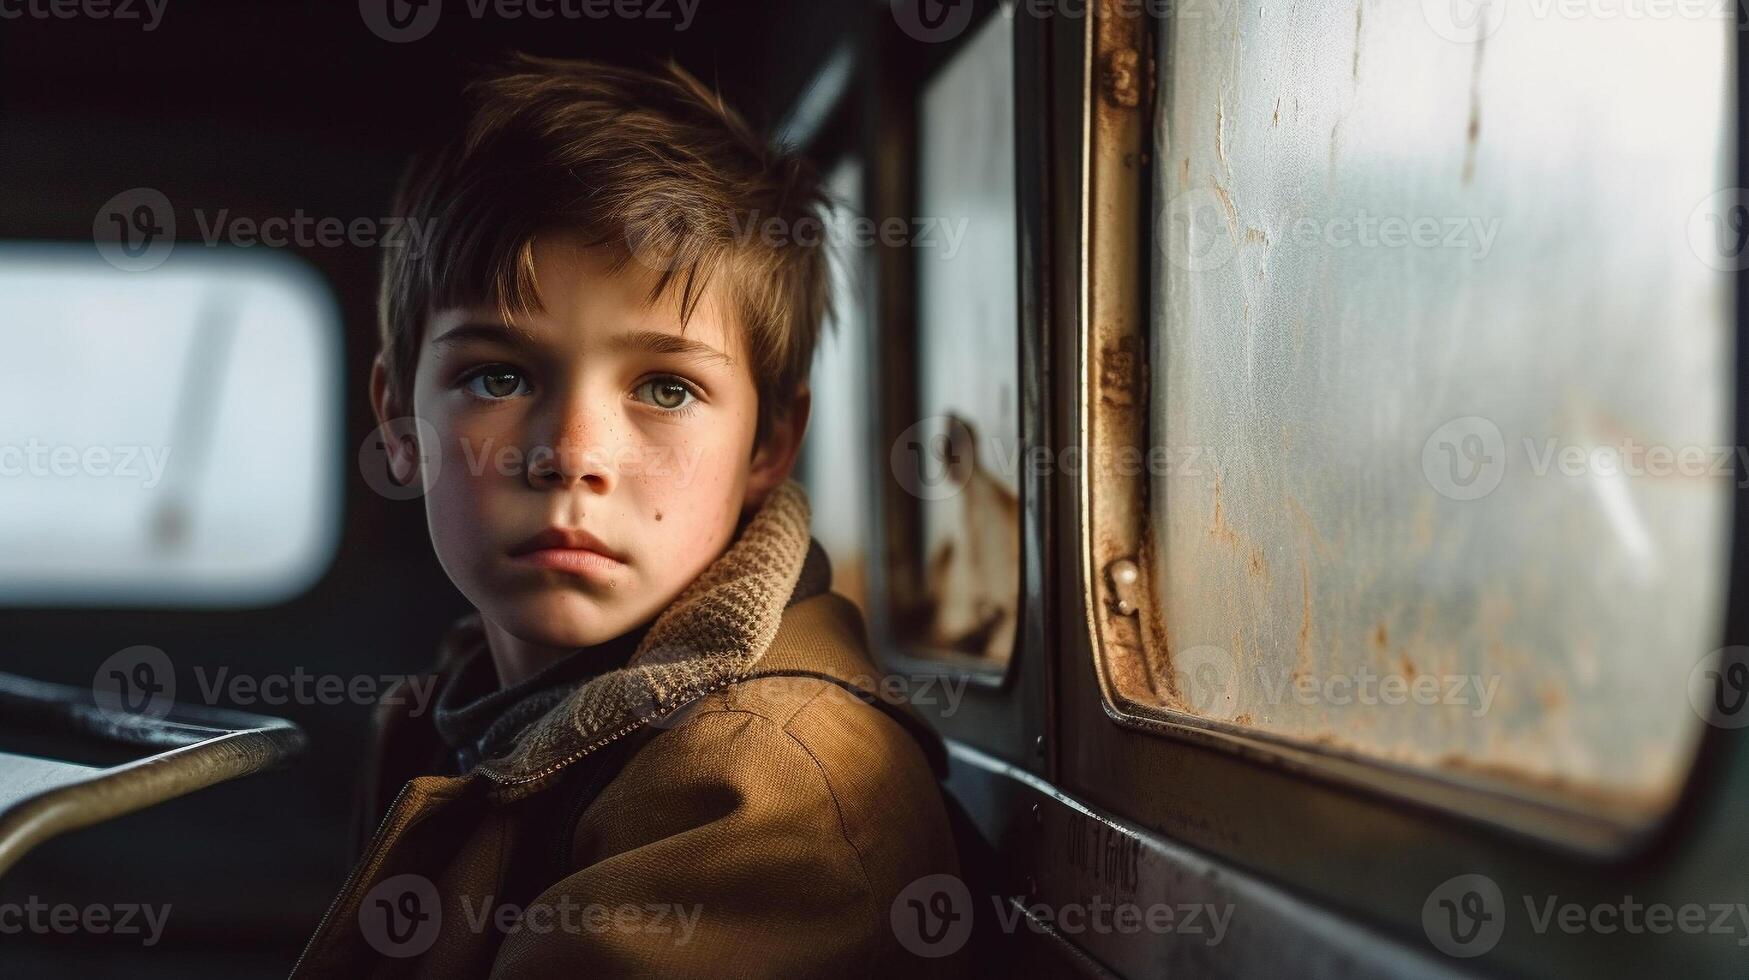 triste, effrayé, solitaire et du froid enfant est assis sur une école autobus seul - génératif ai. photo